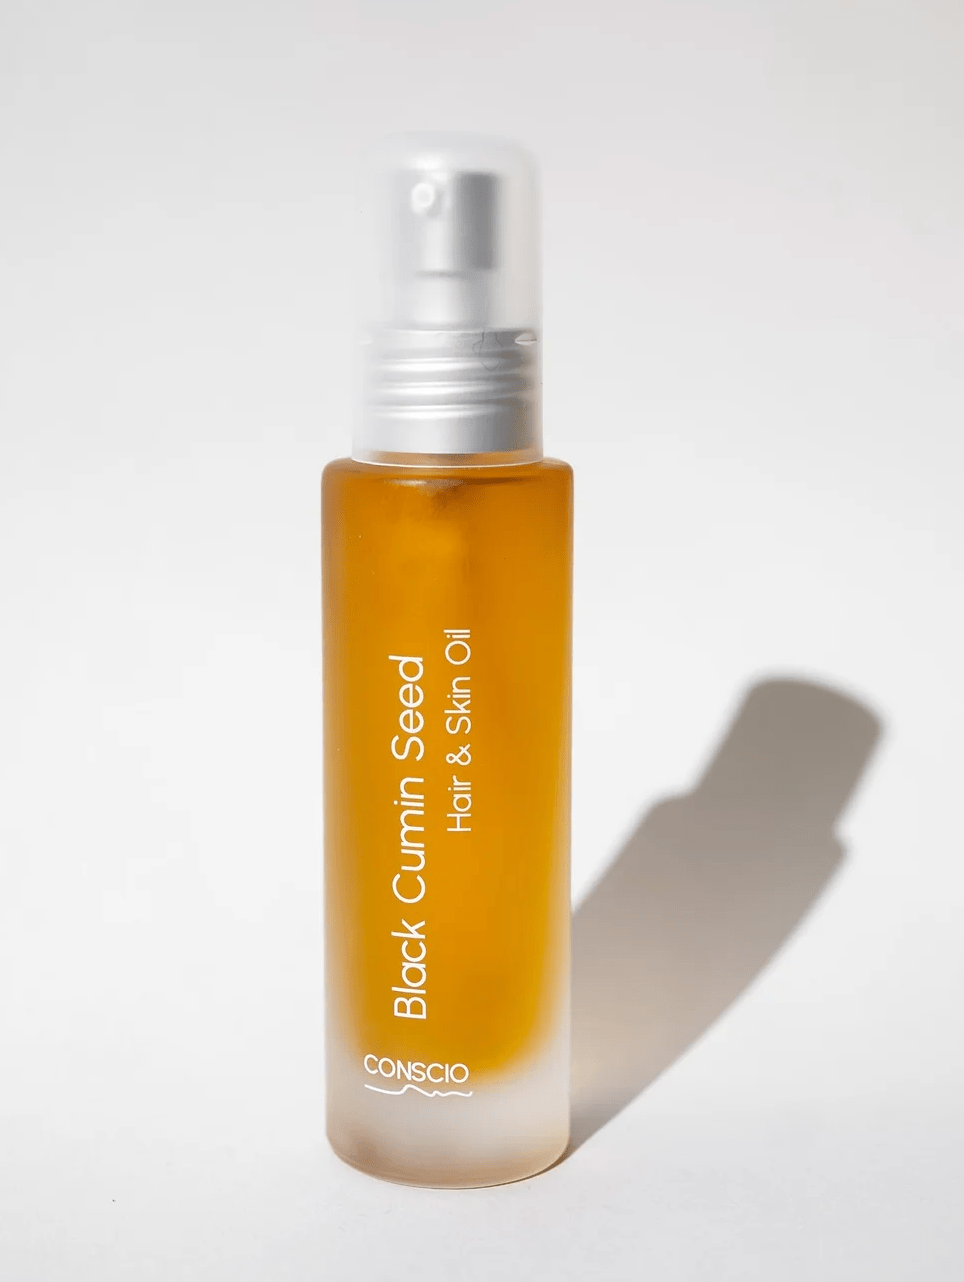 Een afbeelding van CONSCIO's haar- en huidverzorgingsproduct, duurzaam verpakt en gemaakt van 100% natuurlijke ingrediënten, klaar om een pure douche-ervaring te bieden.